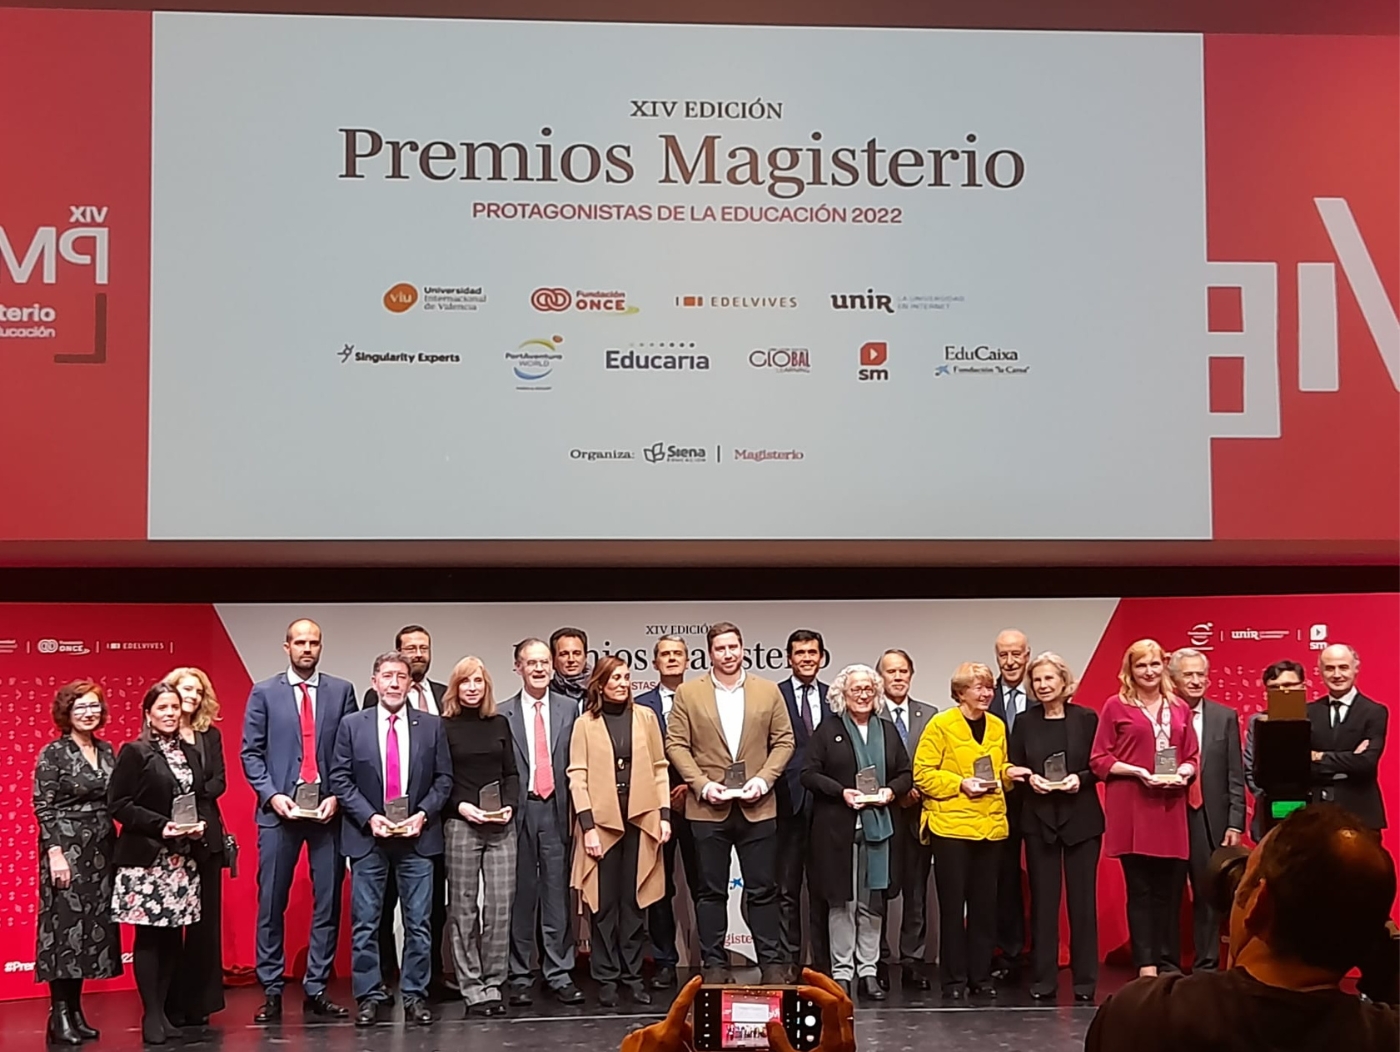 Premios Magisterio FSIE participa en su XIV edición Protagonistas de la Educación Caixaforum Madrid 2022